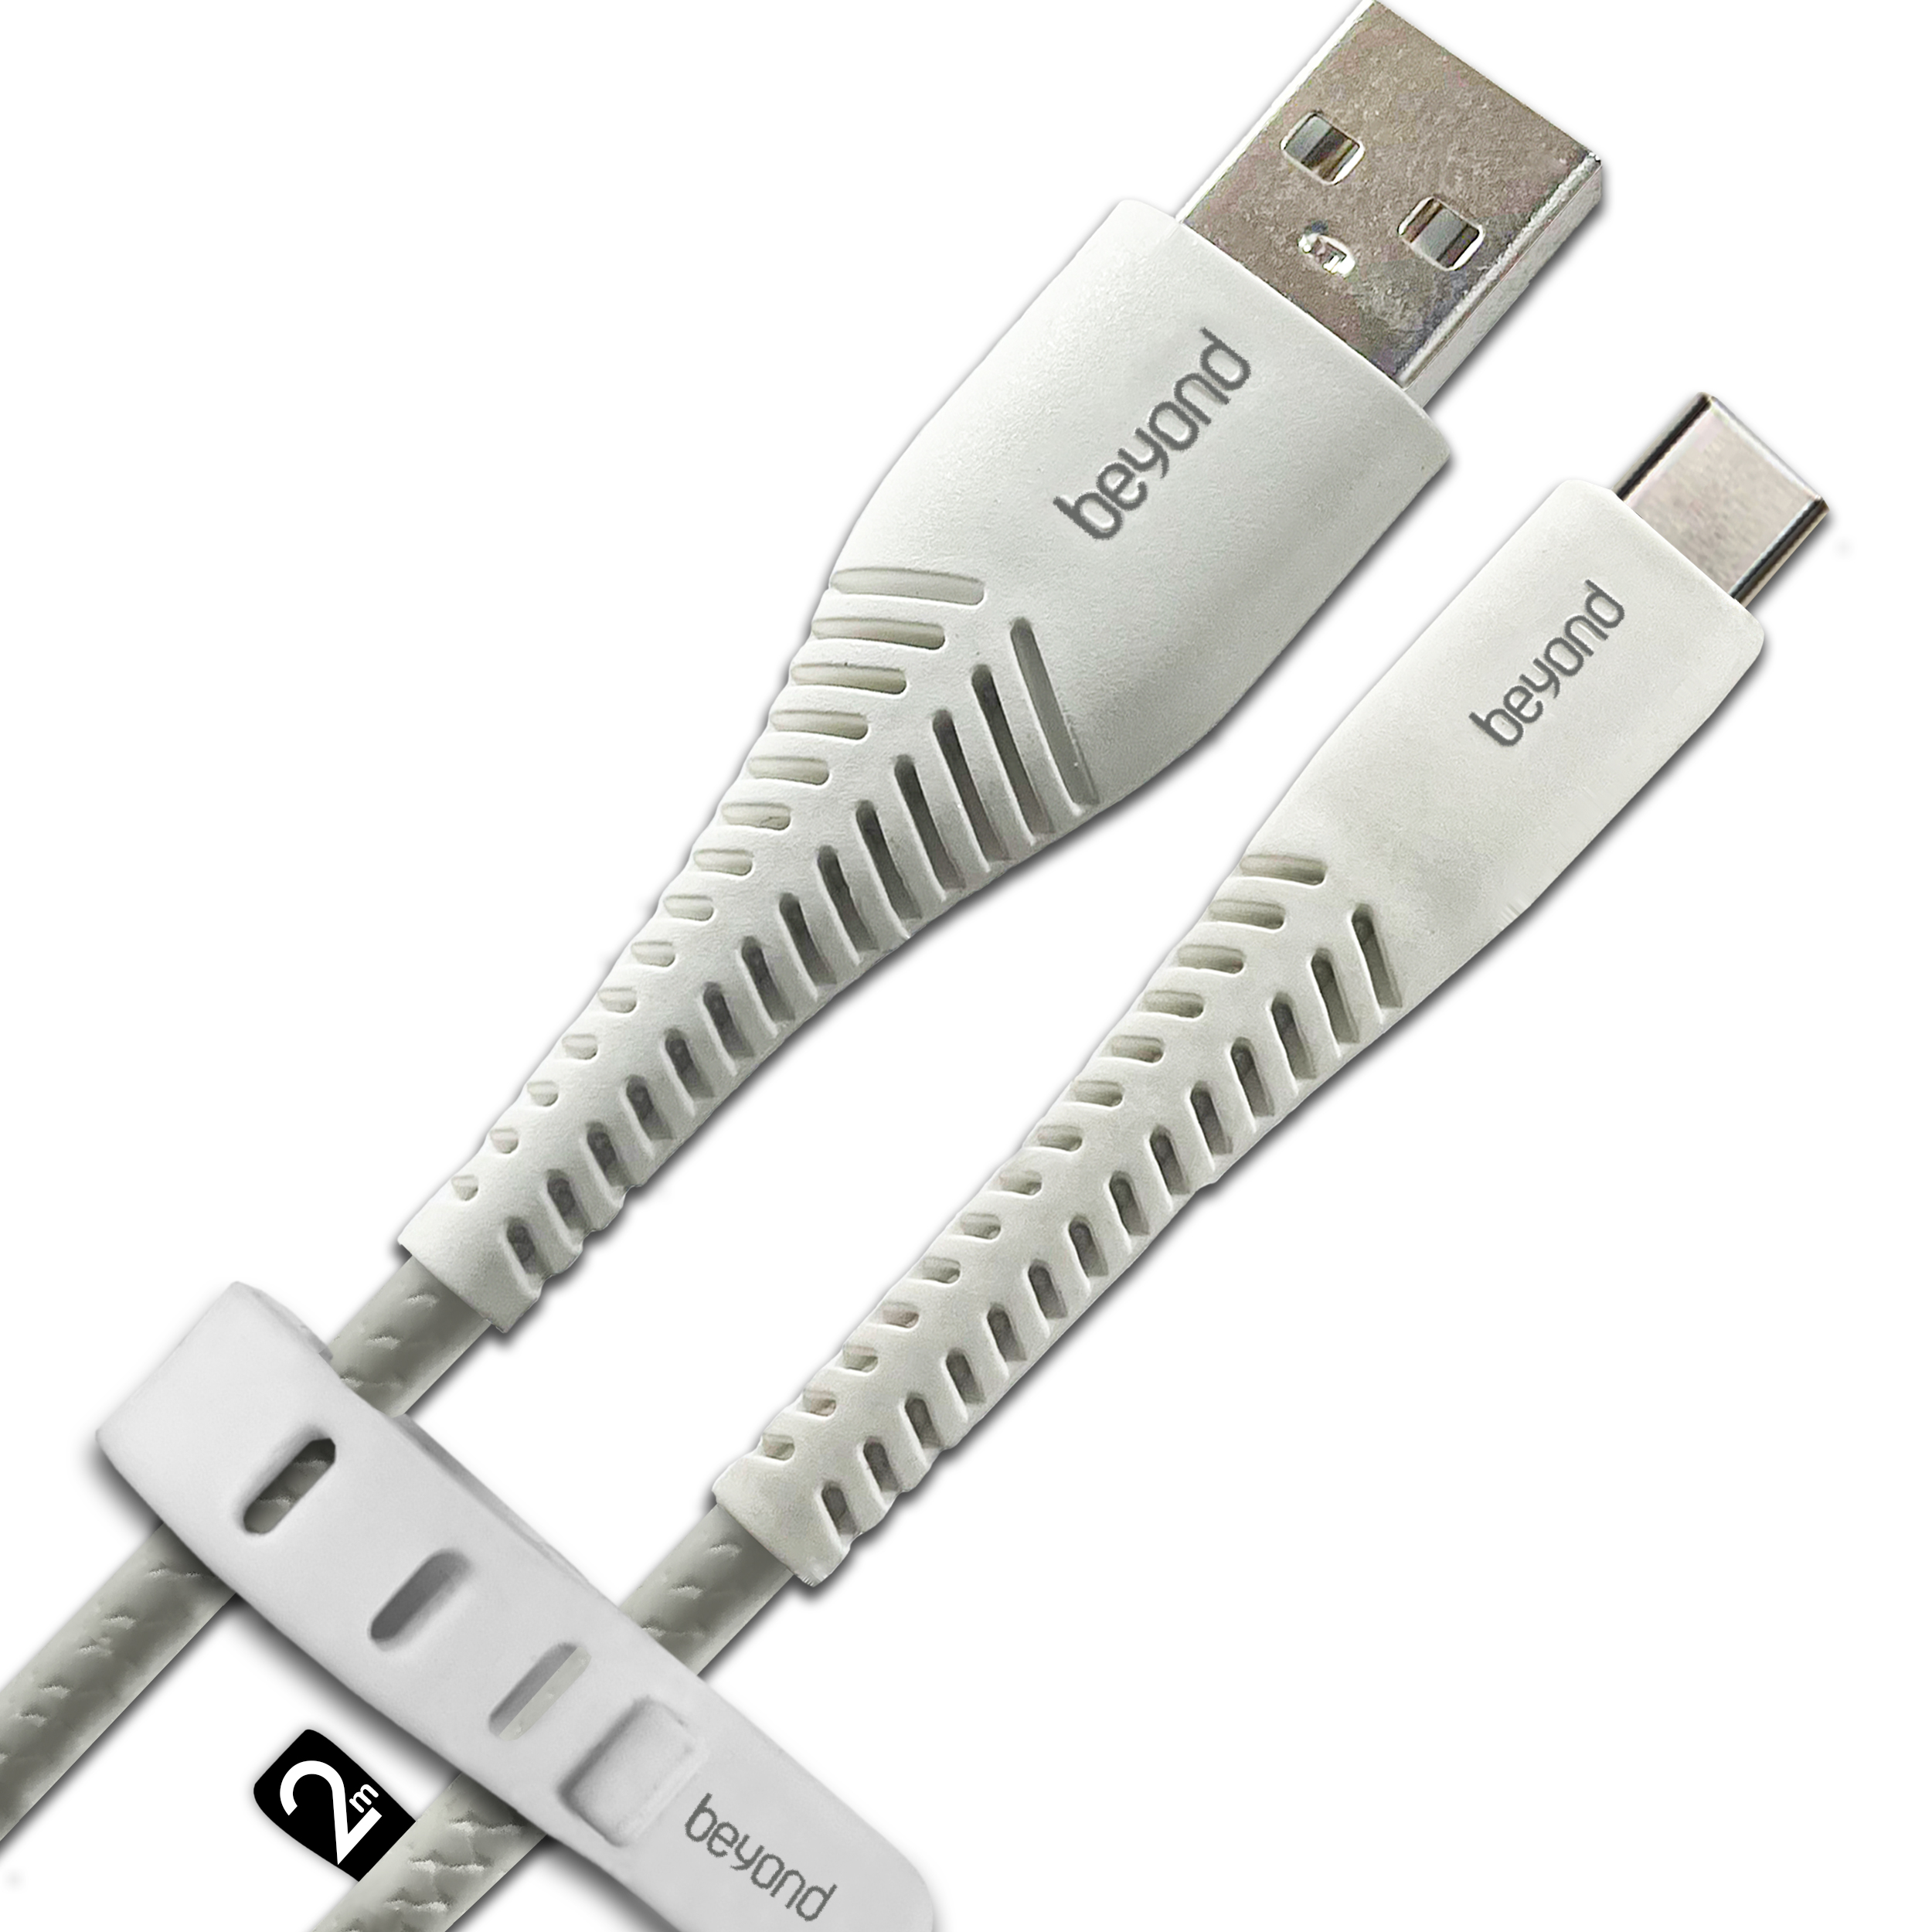  کابل تبدیل USB به USB-C بیاند مدل BUC-302LT FAST CHARGE طول 2 متر